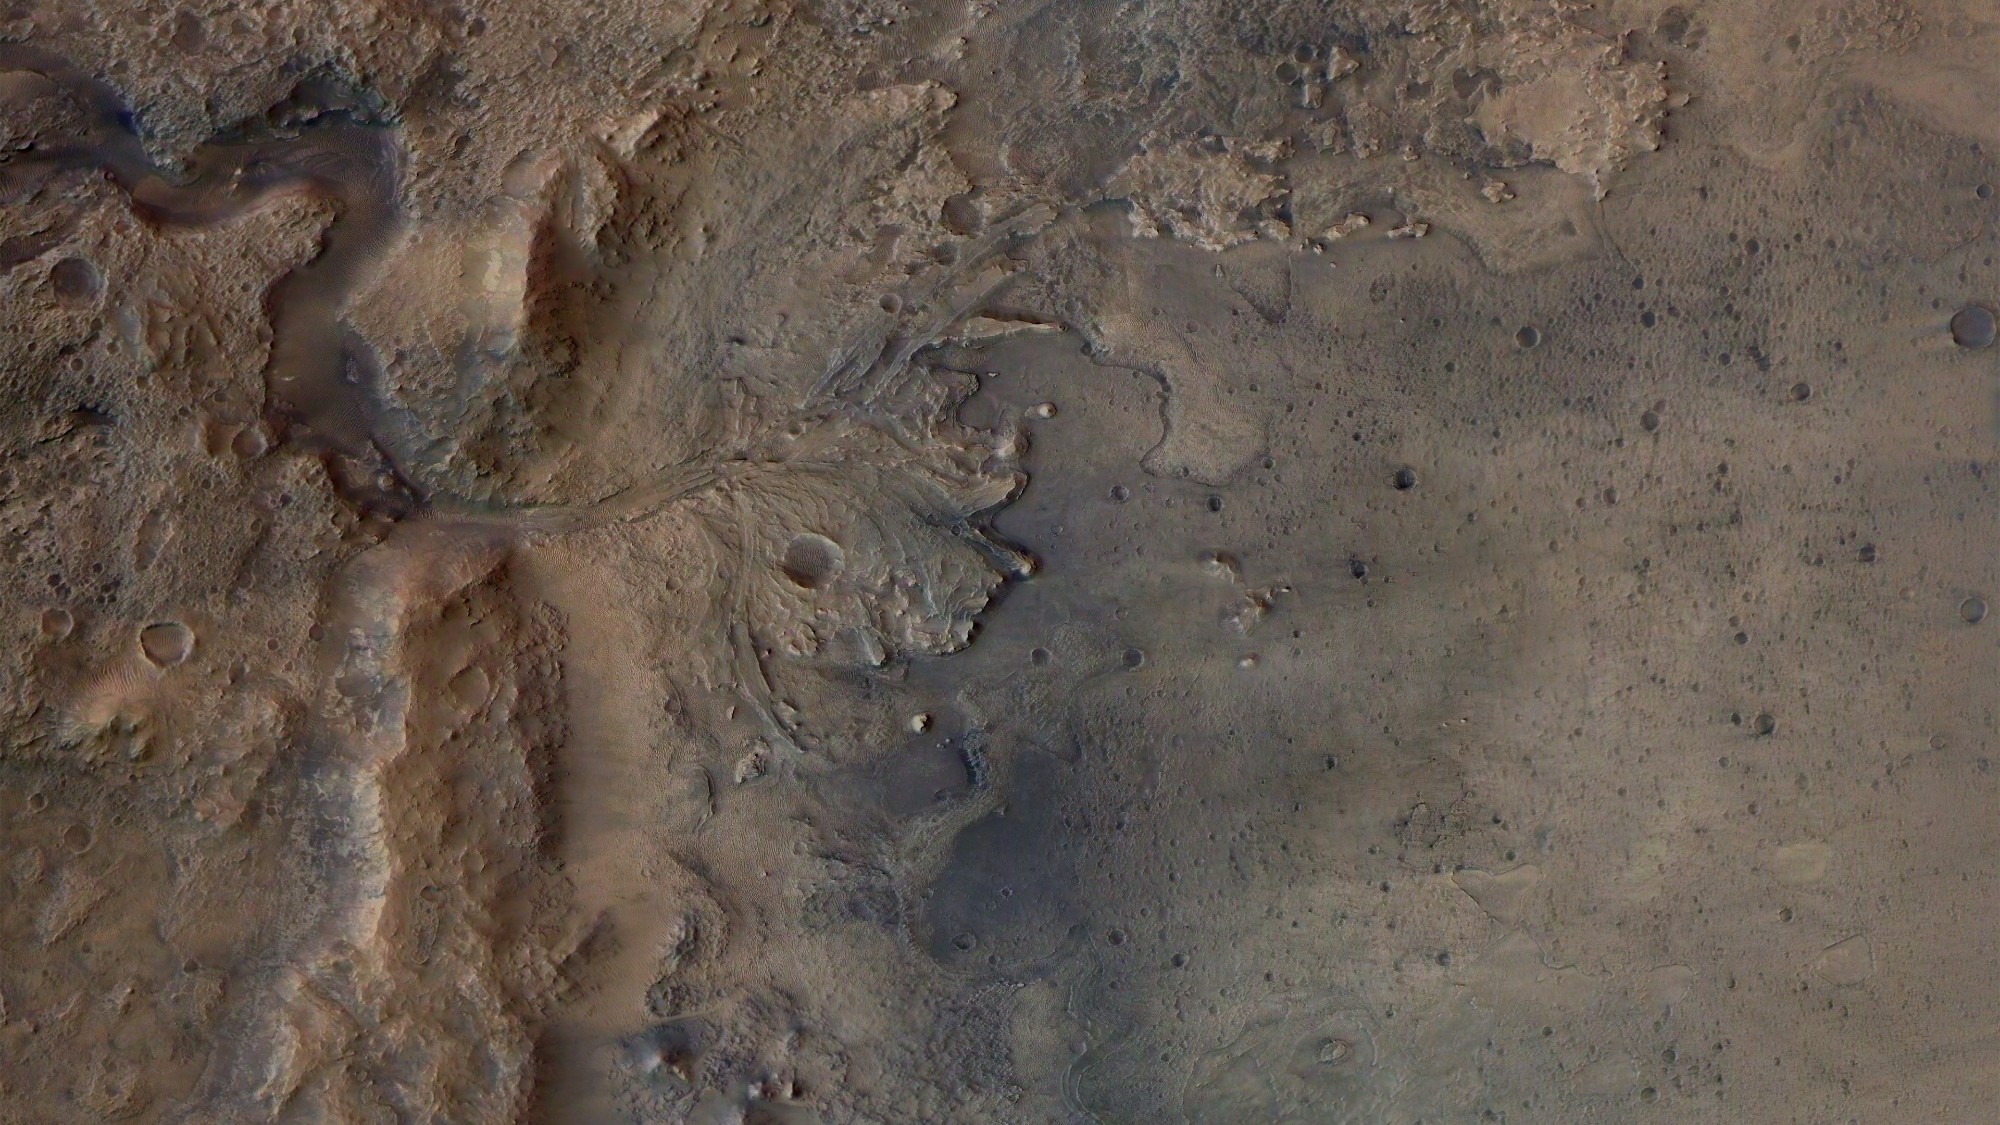 The Mars Jezero crater